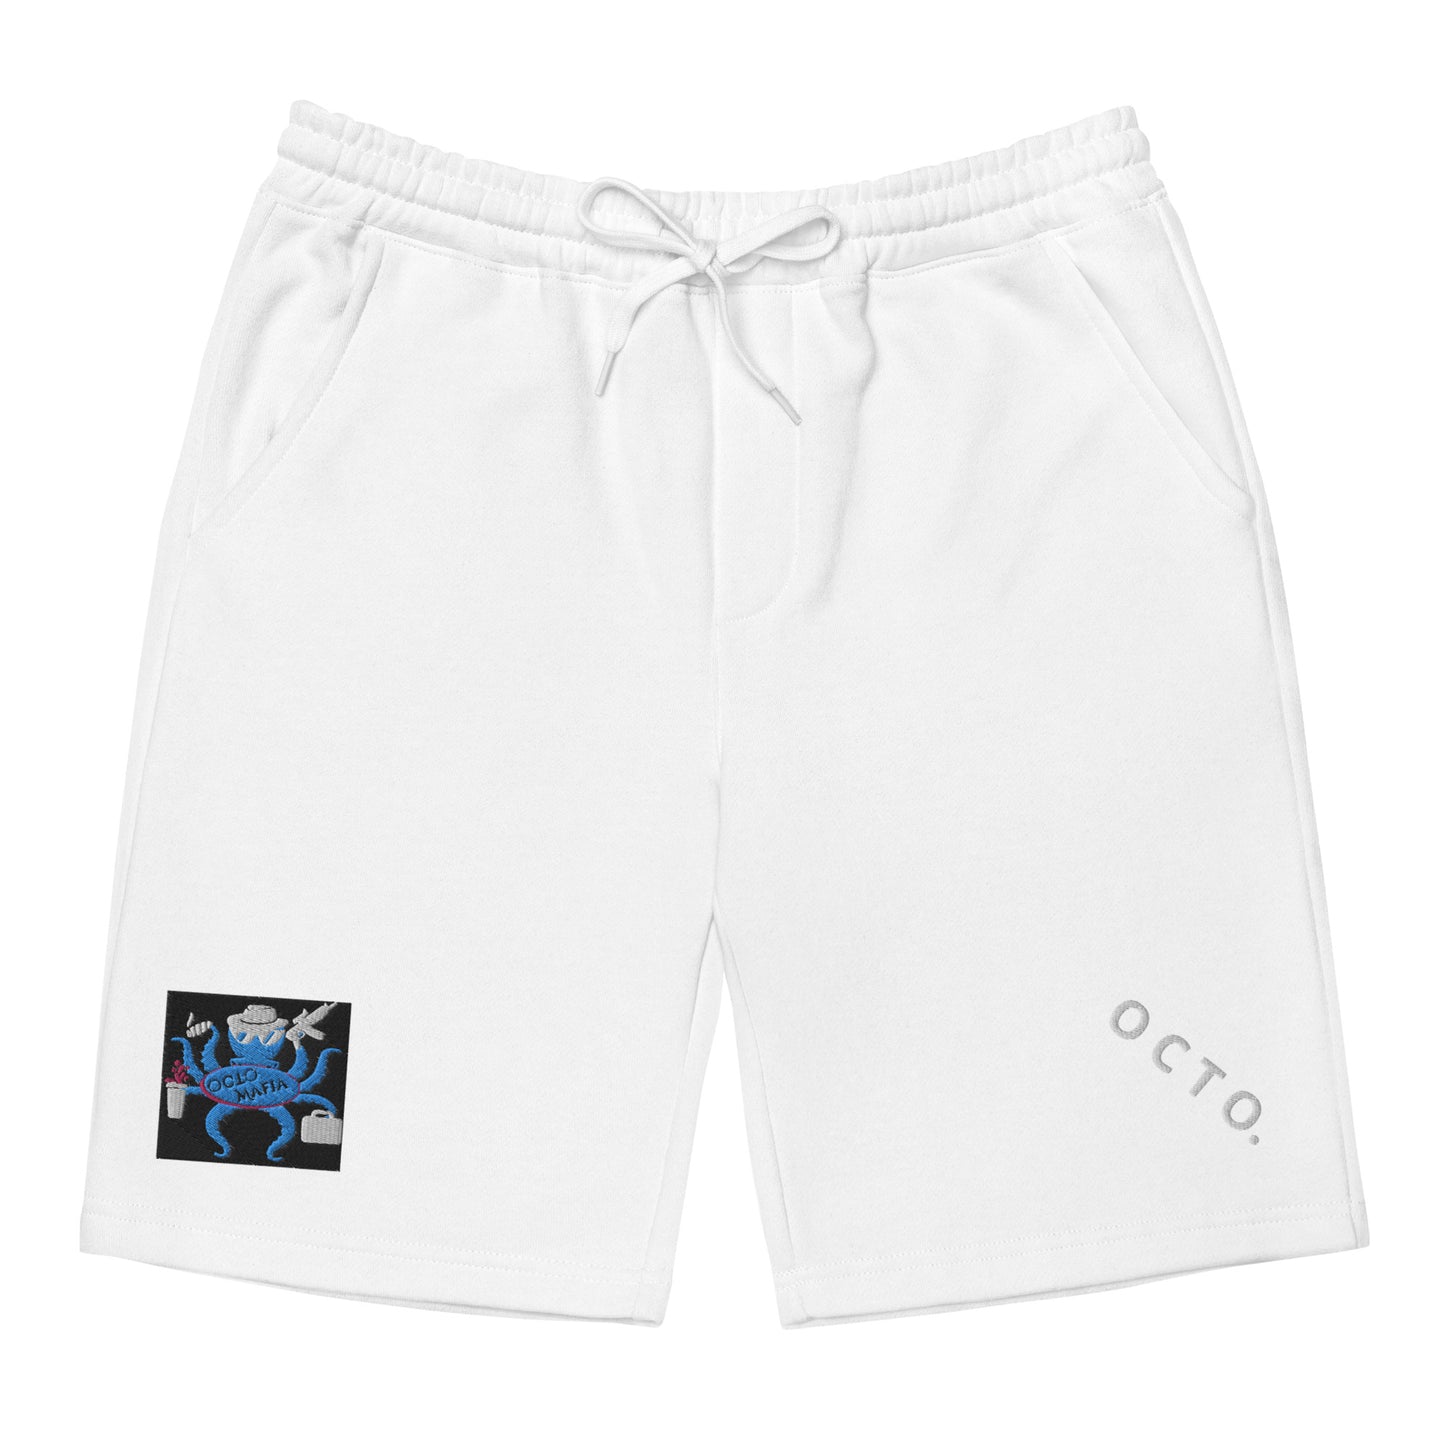 Octo. Mafia "mindset" shorts